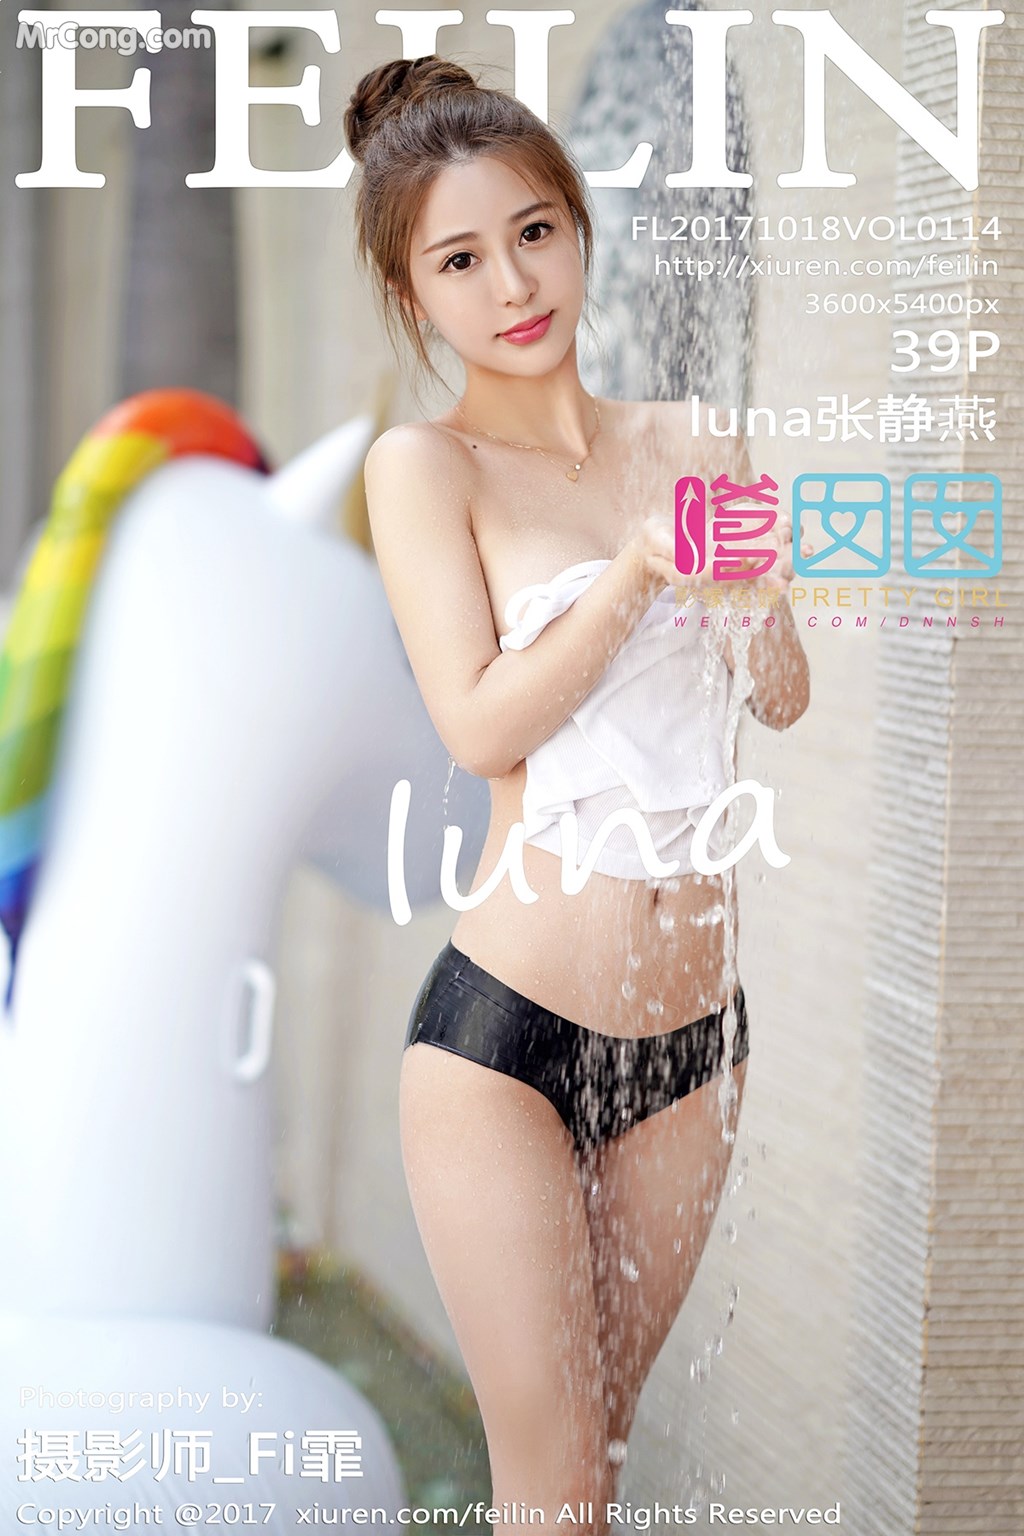 FEILIN Vol.114: Model Zhang Jing Yan (luna 张静燕) (40 photos) photo 1-0